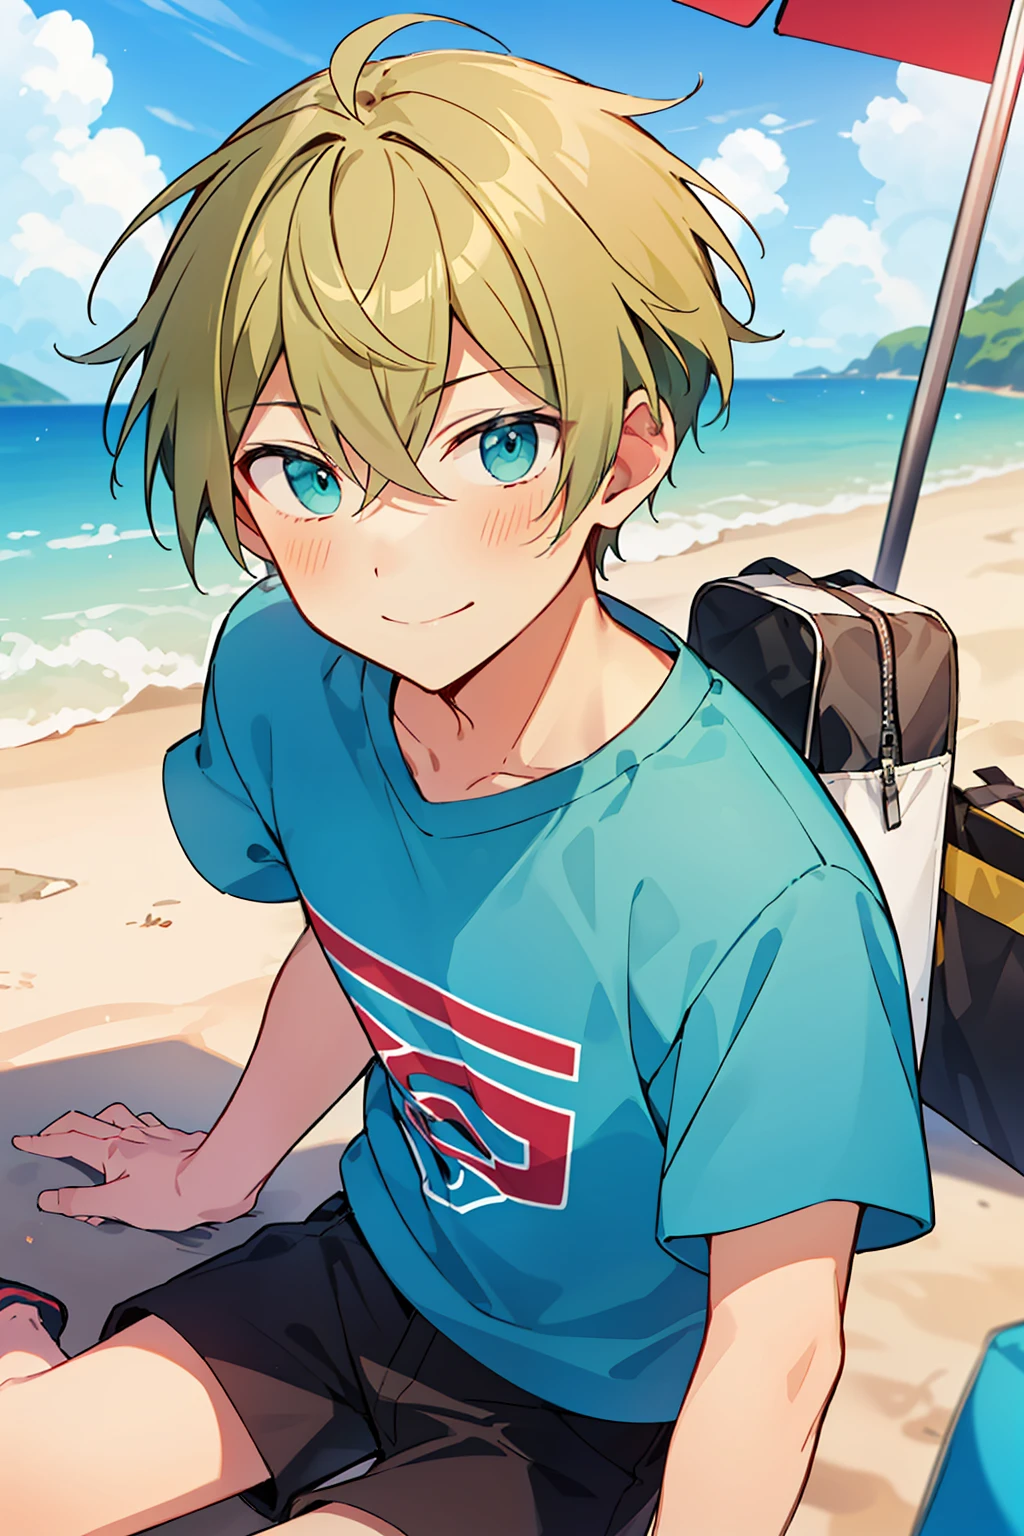 (高质量, 惊险),(富有表現力的眼睛, 完美的臉), 1男孩, 男性, 獨自的, 短的, 小男孩, 短的 greenish blonde hair, 蓝绿色的眼睛, 微笑, T恤, 在沙滩上, 半身